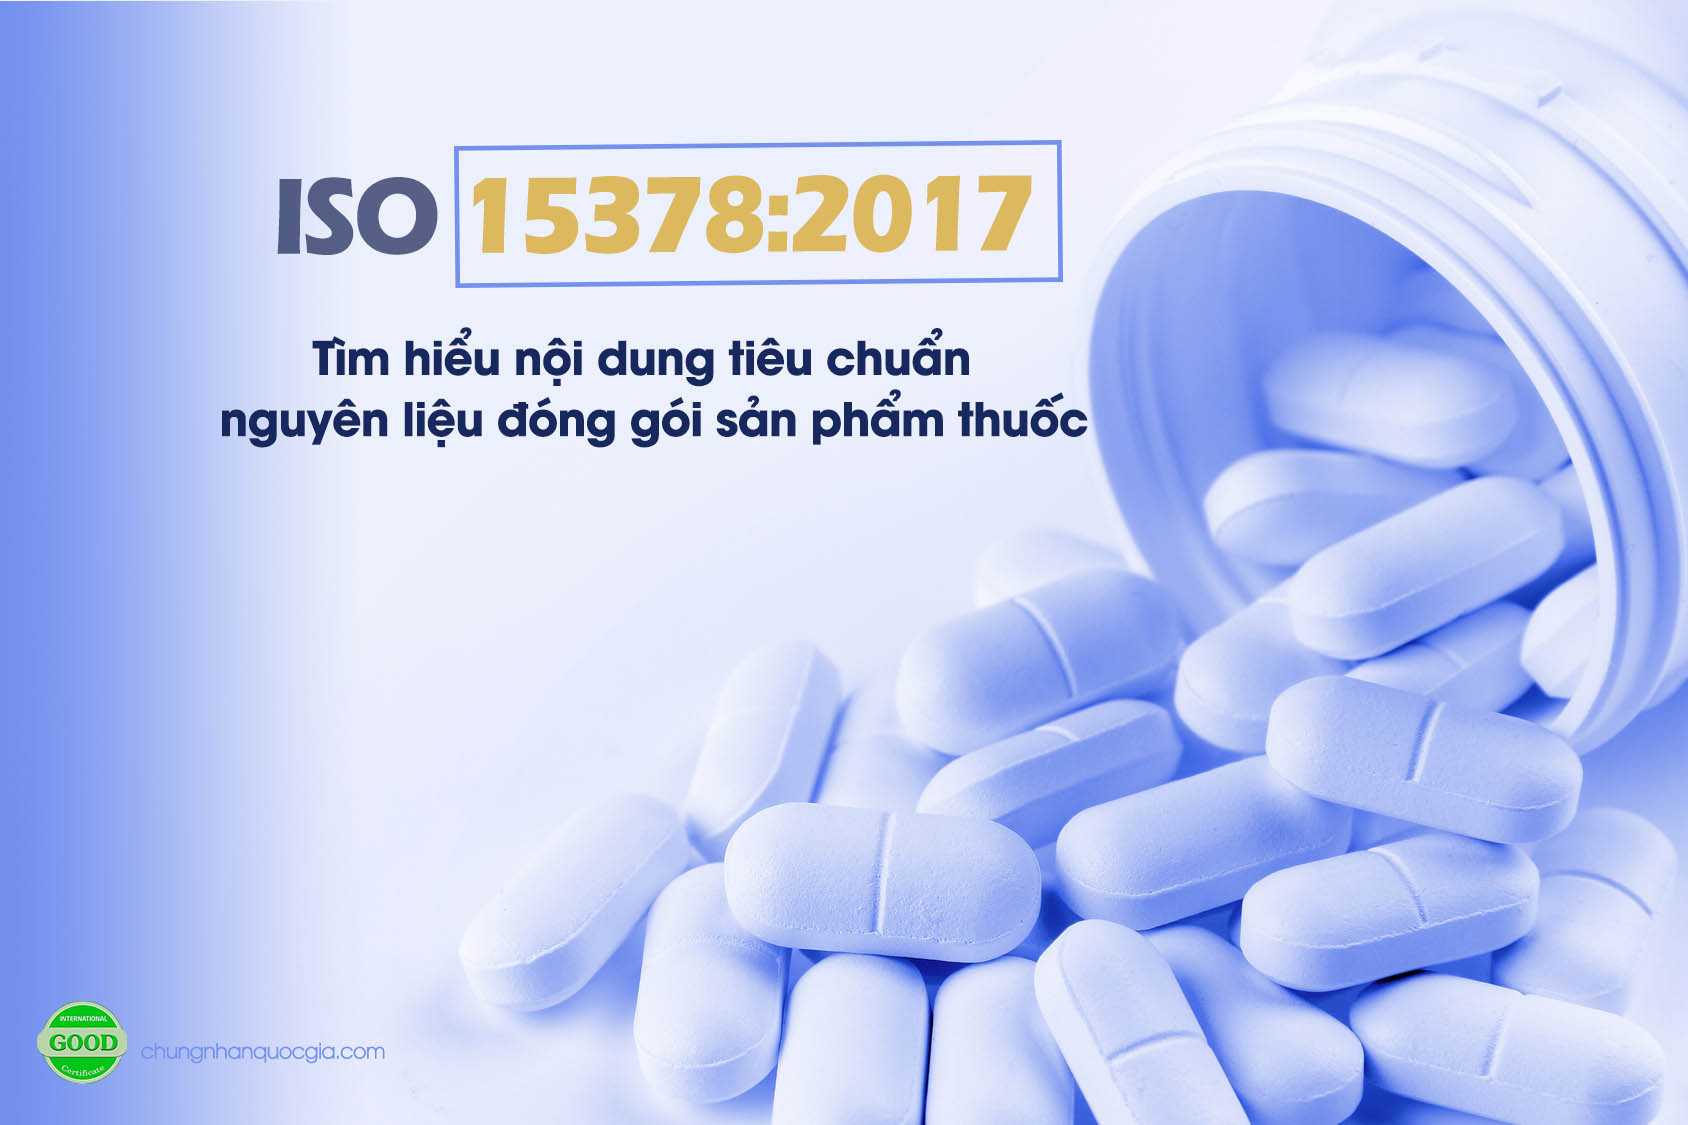 ISO 15378:2017: Tổng quan về tiêu chuẩn nguyên liệu đóng gói sản phẩm thuốc